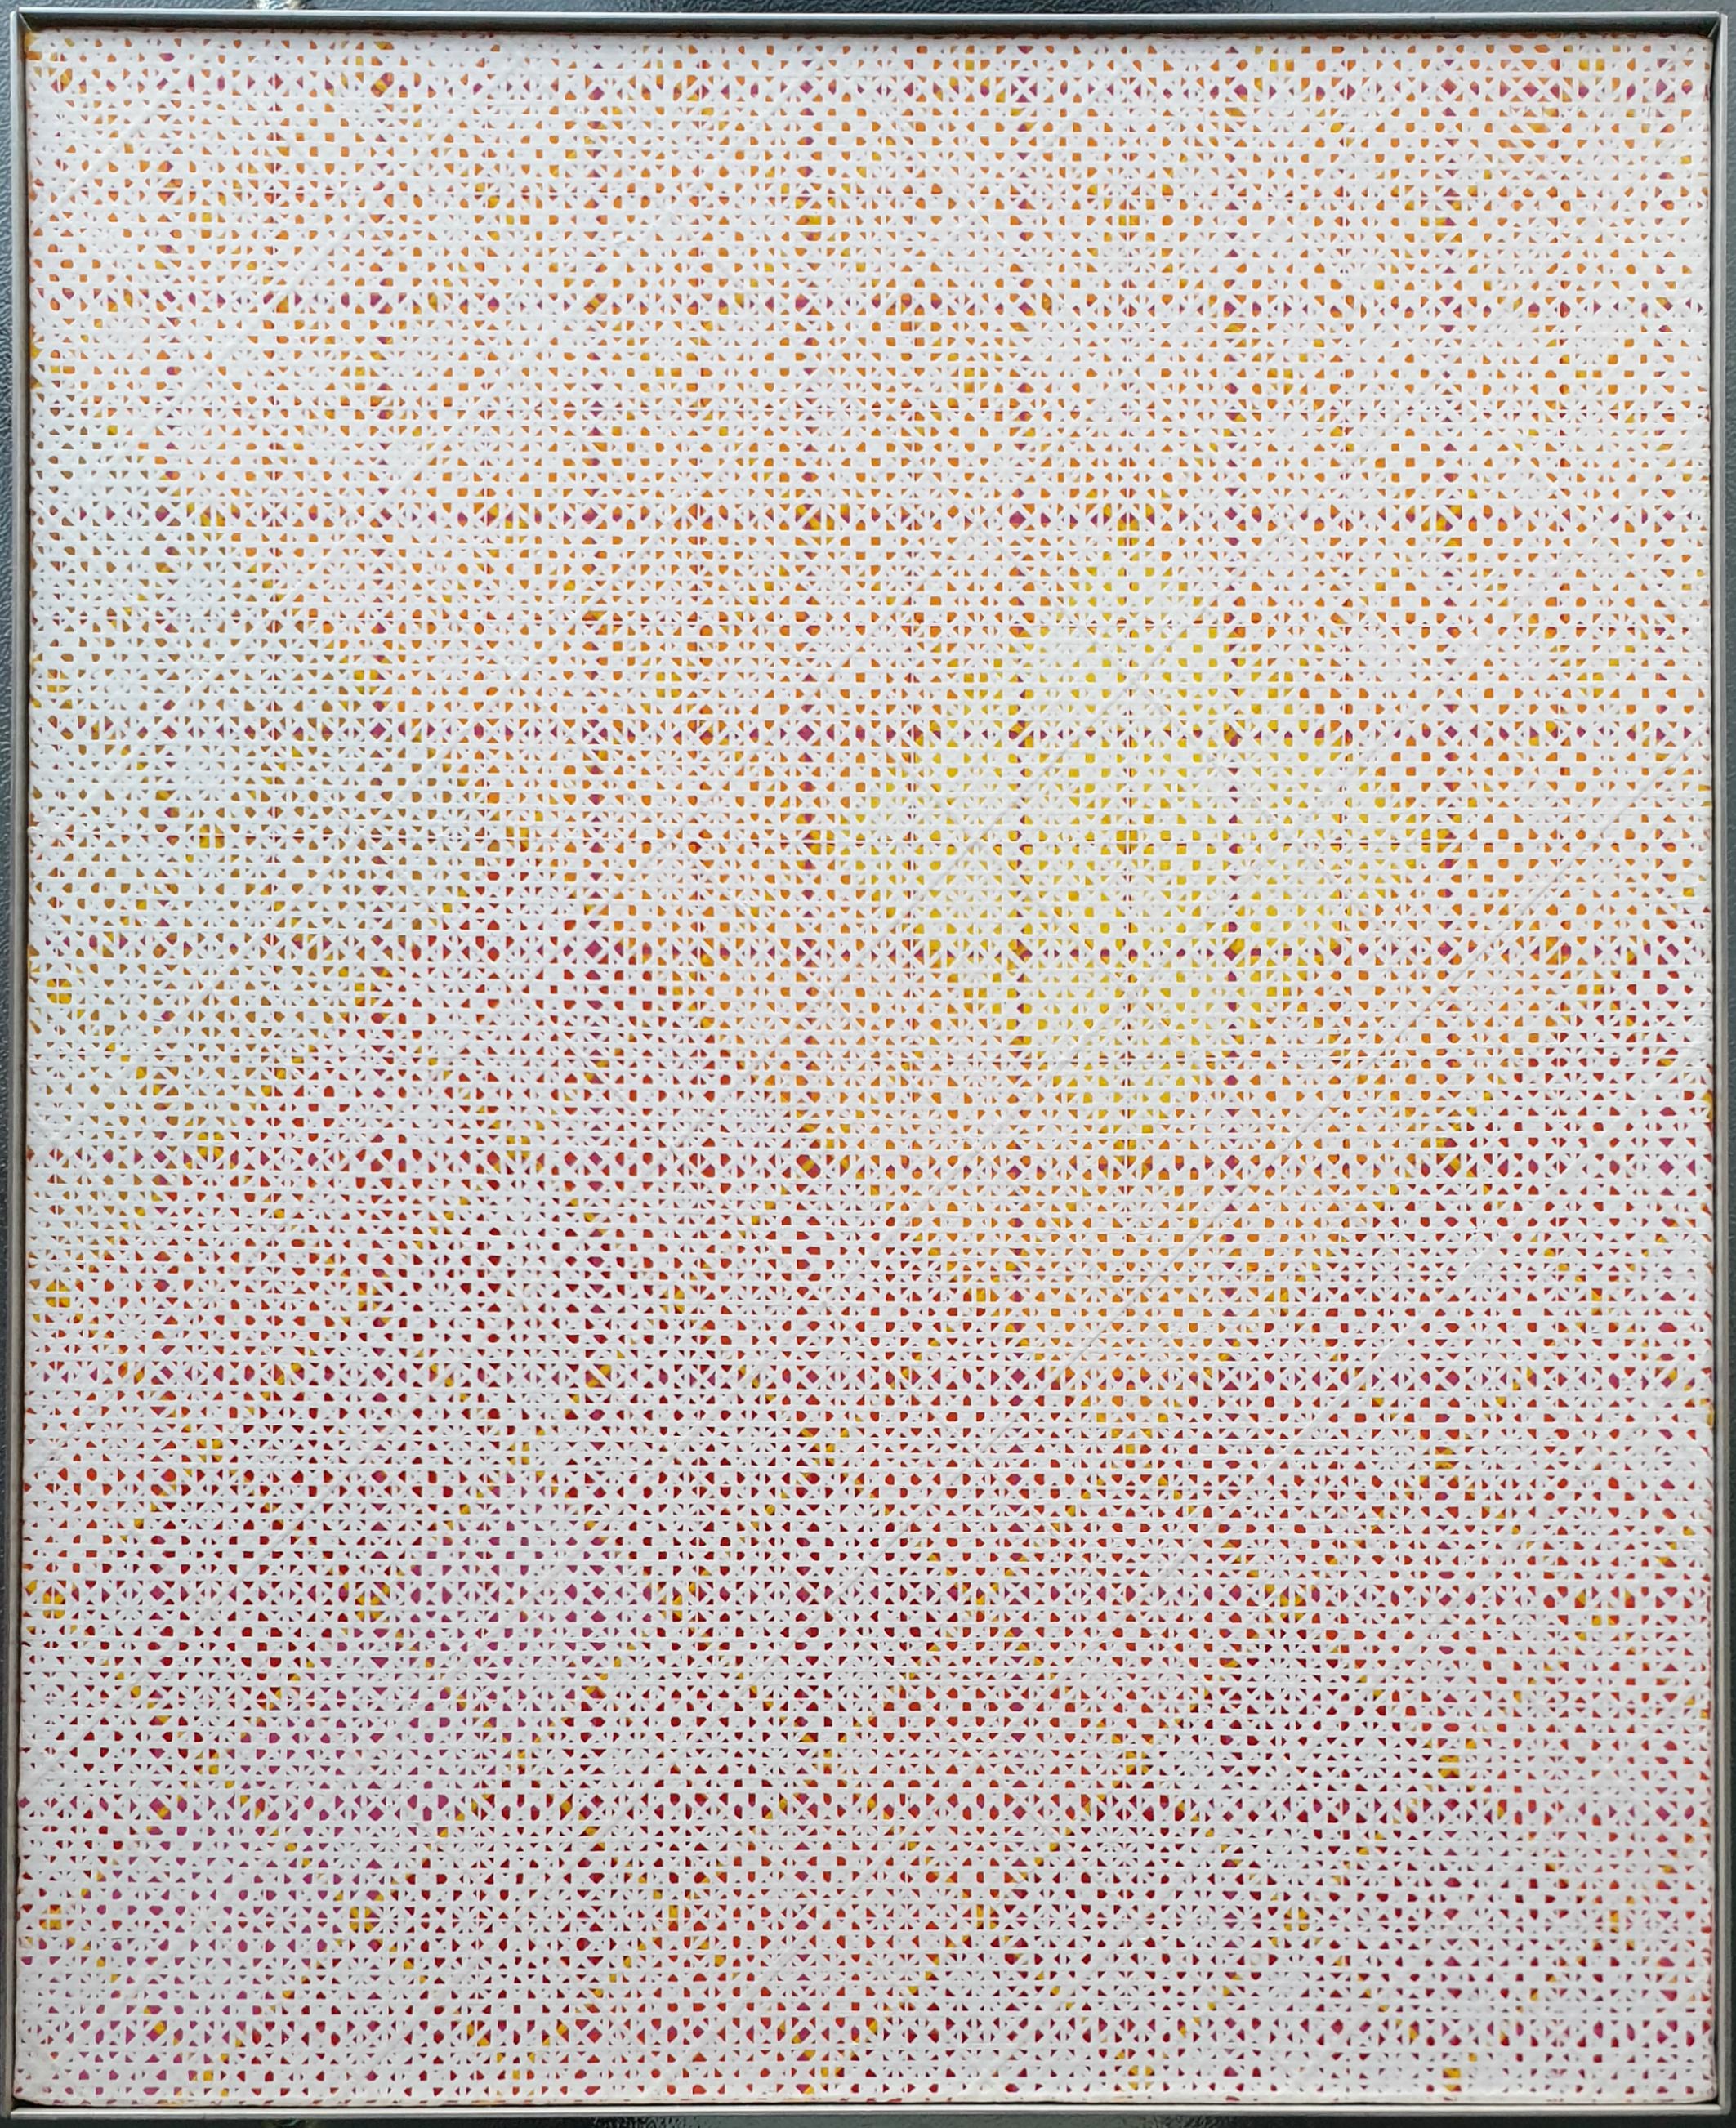 Désert (inventaire de l'artiste n° 121) est une peinture géométrique abstraite contemporaine unique de taille moyenne sur toile de l'artiste français Charles Bézie. Le tableau est une œuvre de début de carrière de sa série Déserts et un bel exemple